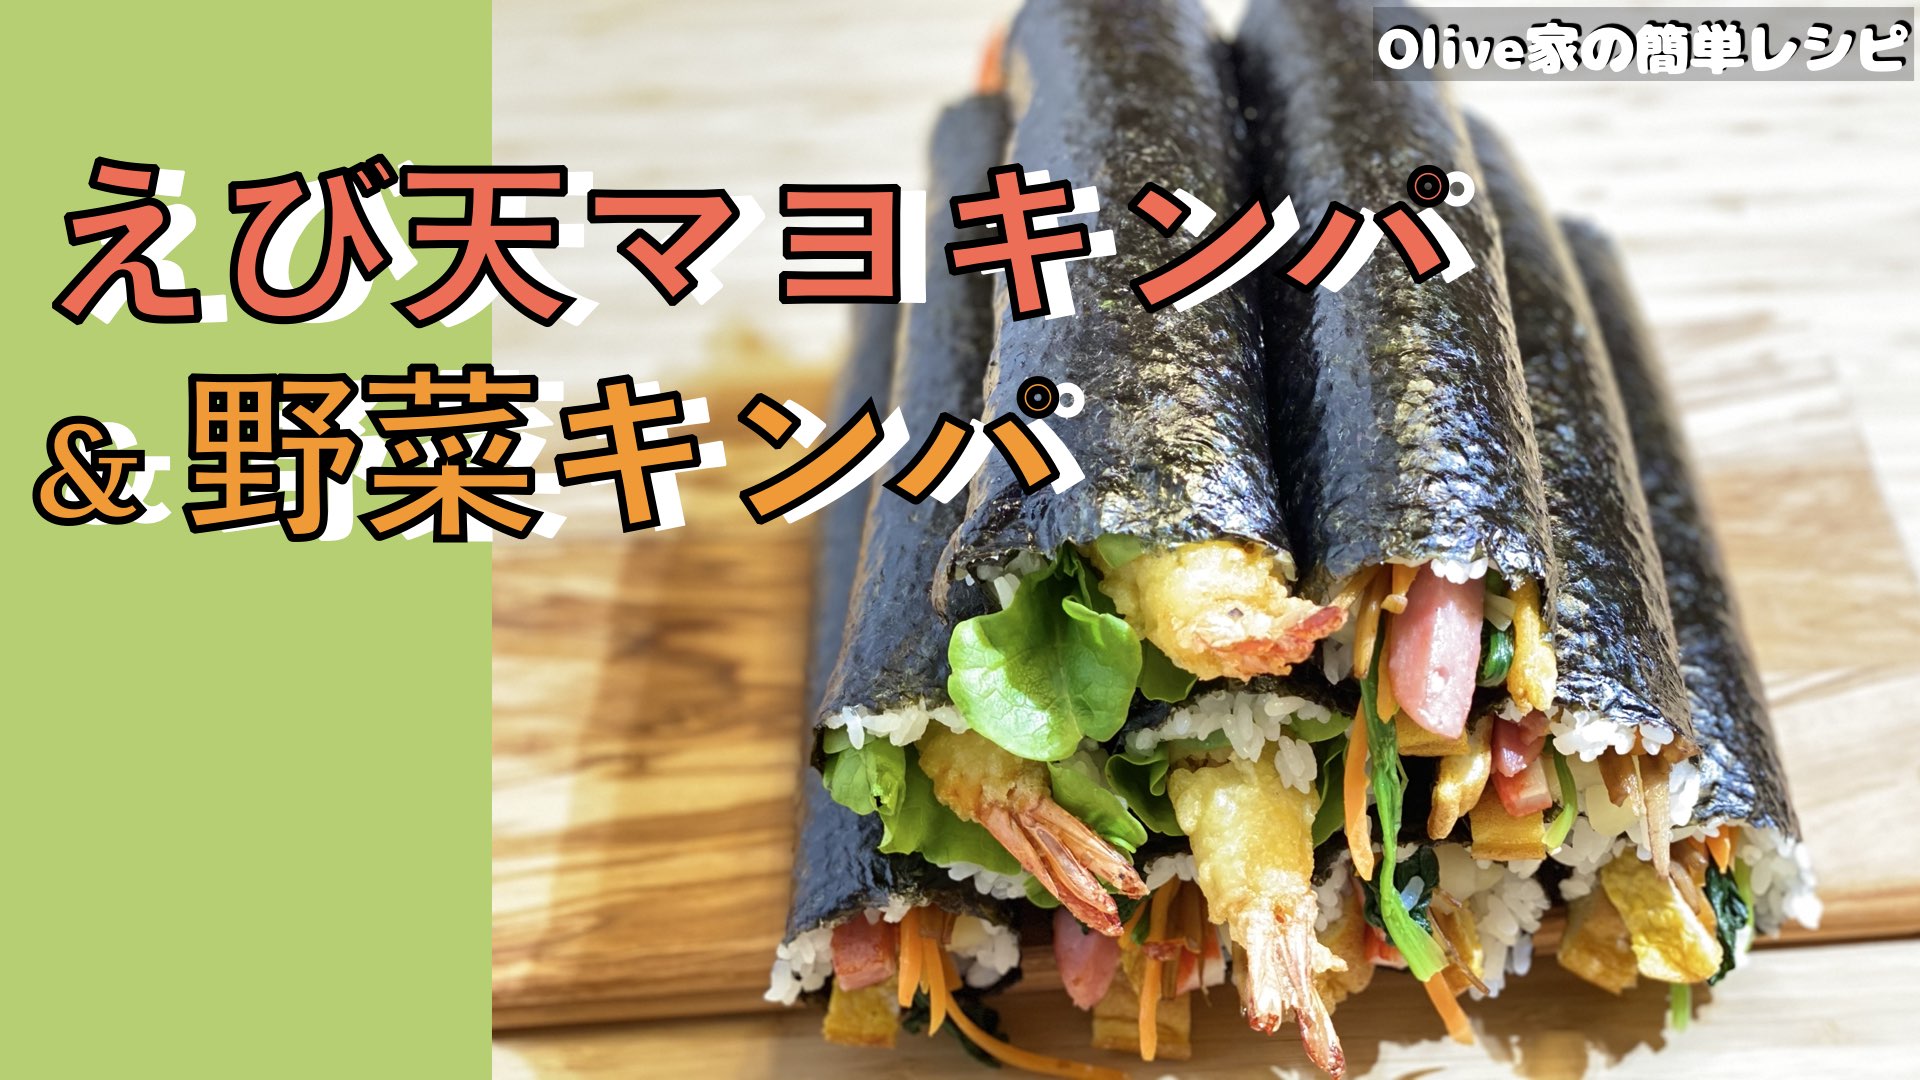 Olive家の簡単レシピ | いつでも食べたくなるキンパ (韓国海苔巻き) | 野菜キンパ 🥕 & えび天マヨキンパ 🍤